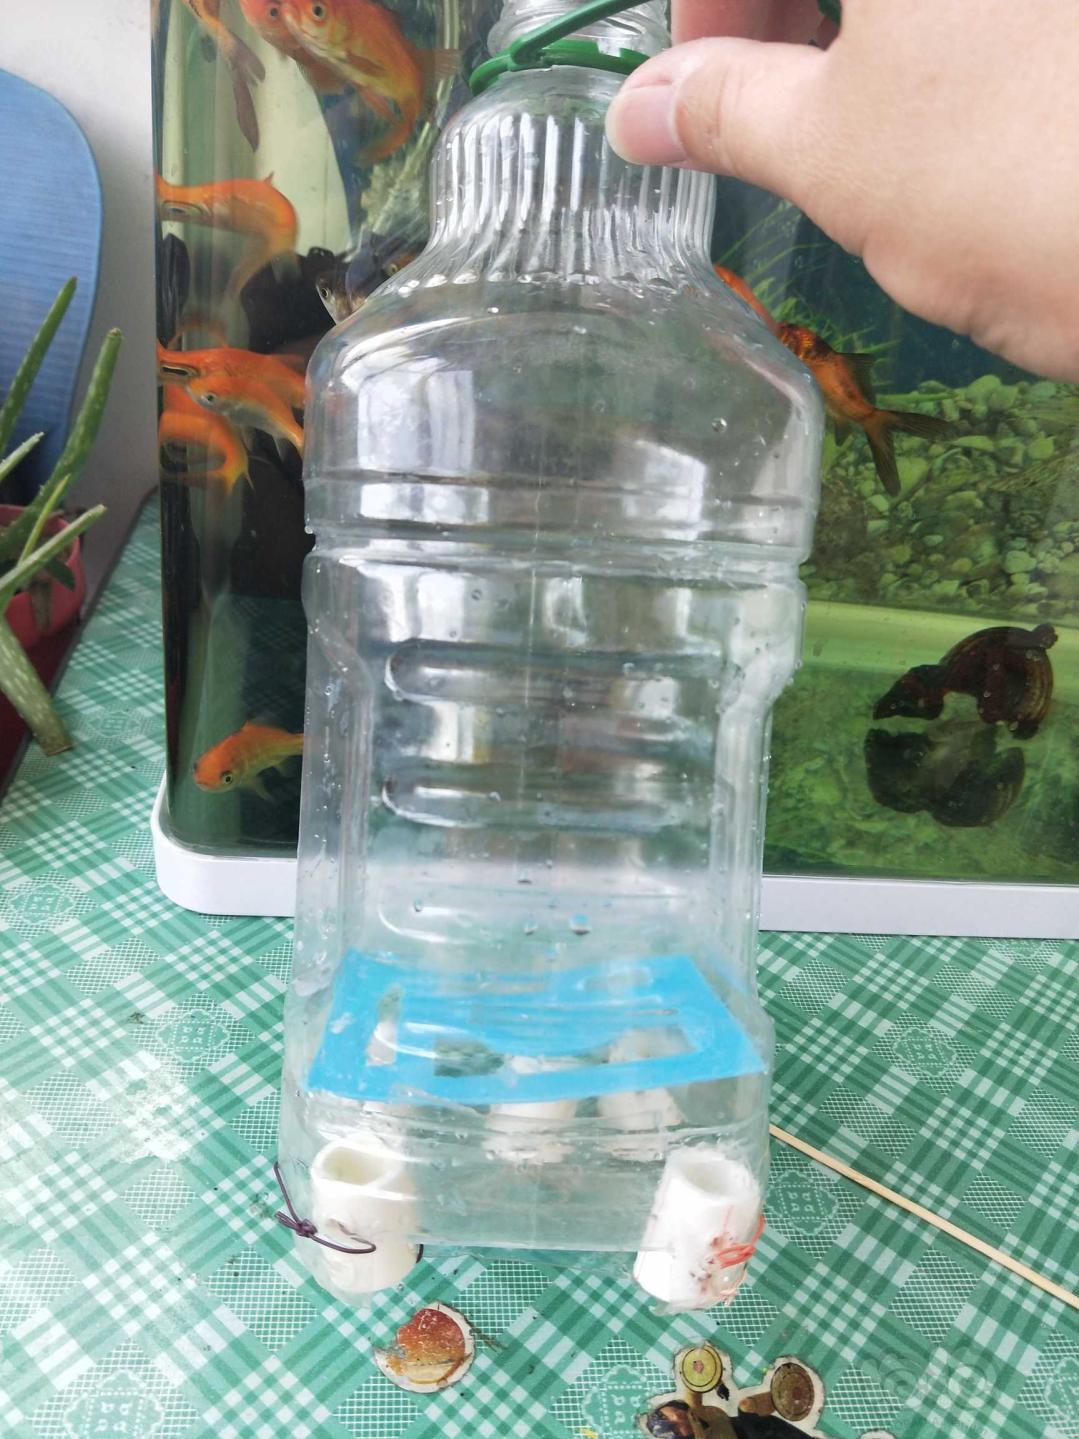 有人反映上一个矿泉水瓶做的反气举小而且丑，这次找了个大瓶子，不过大是大了，还是依然很丑-图4